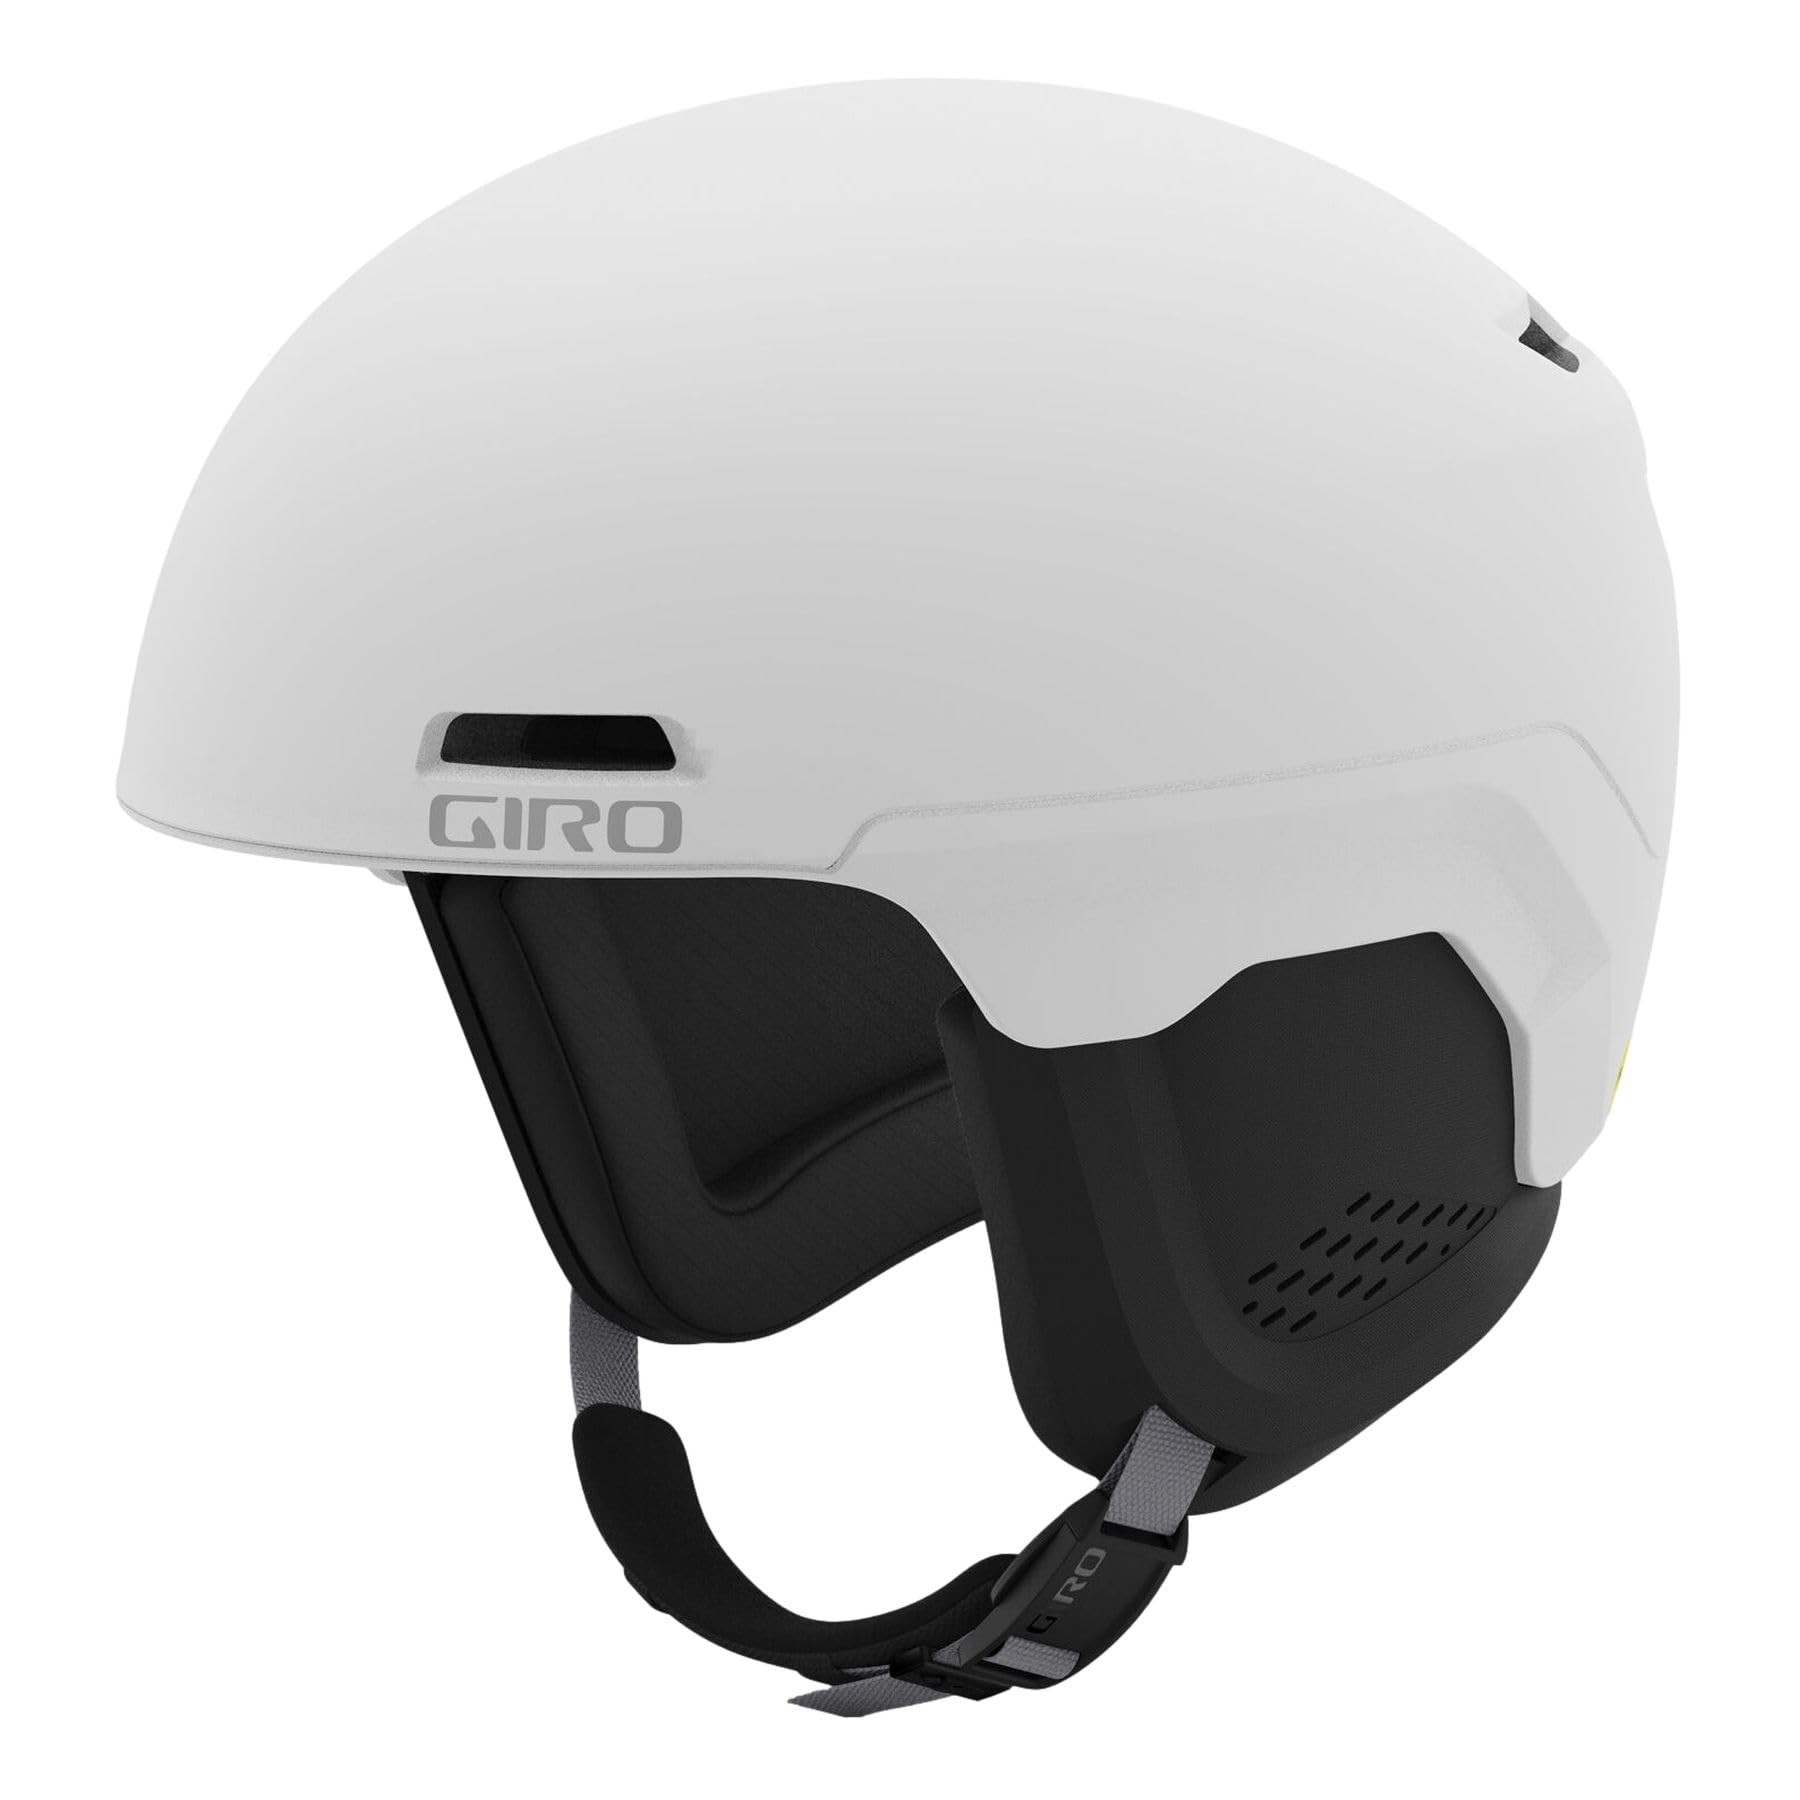 Giro Owen Spherical Ski Helmet - Snowboarding Helmet for Men Women and Youth - Matte White - S 52-55.5cm並行輸入品